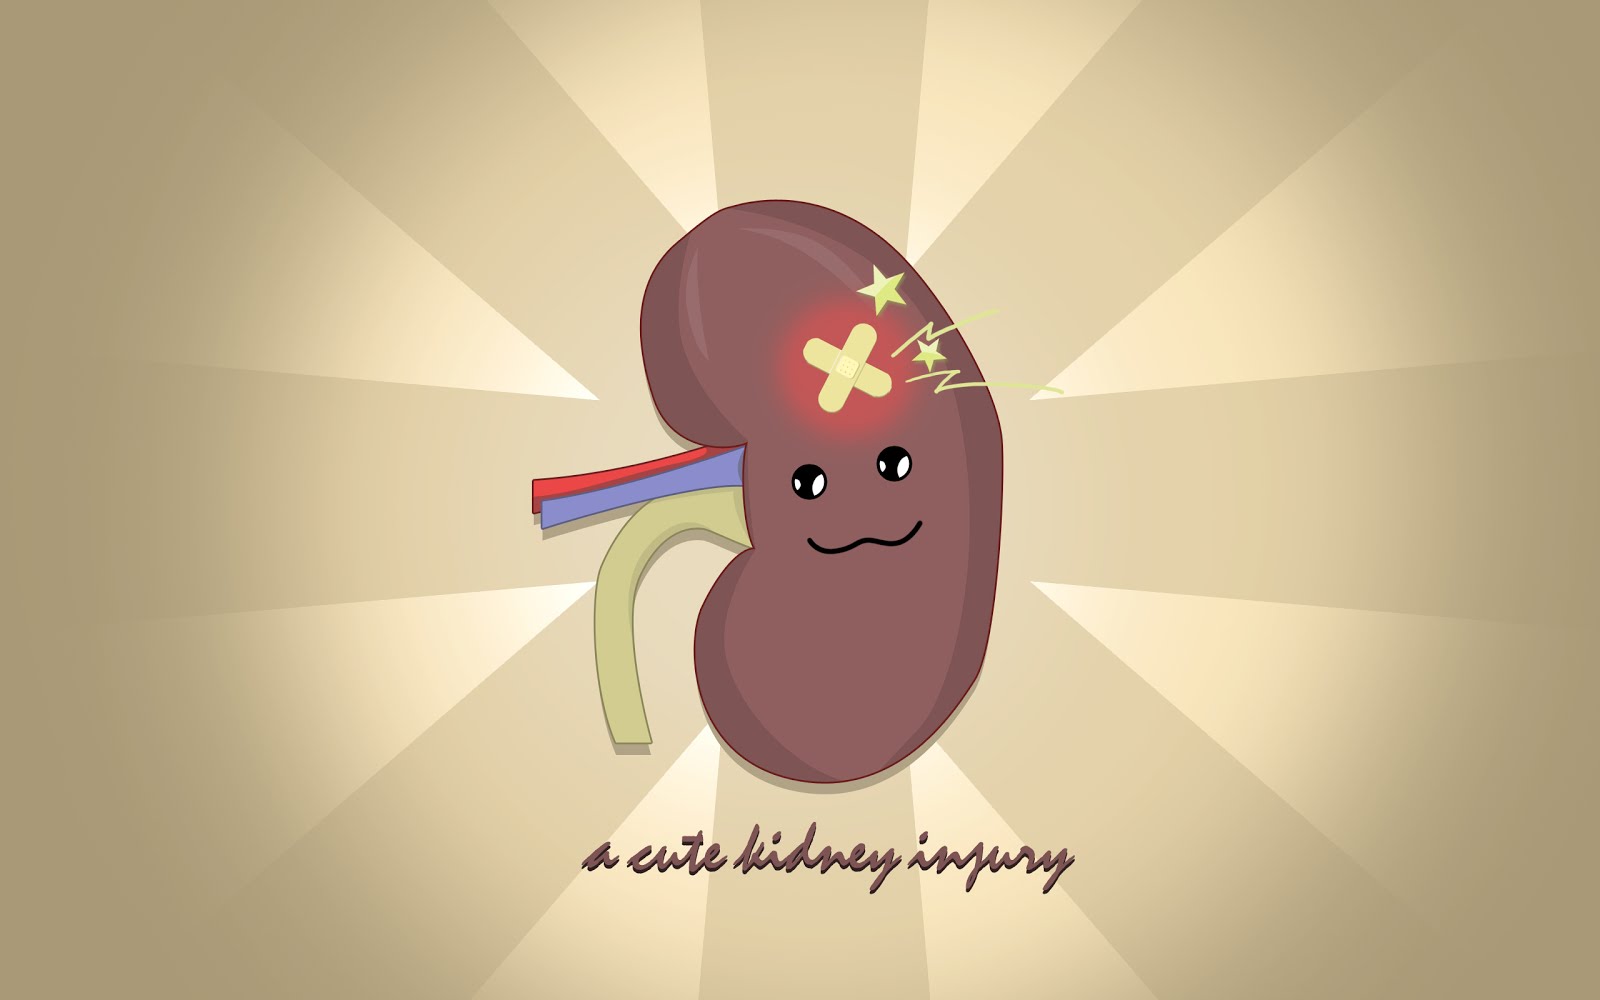 kidney failure